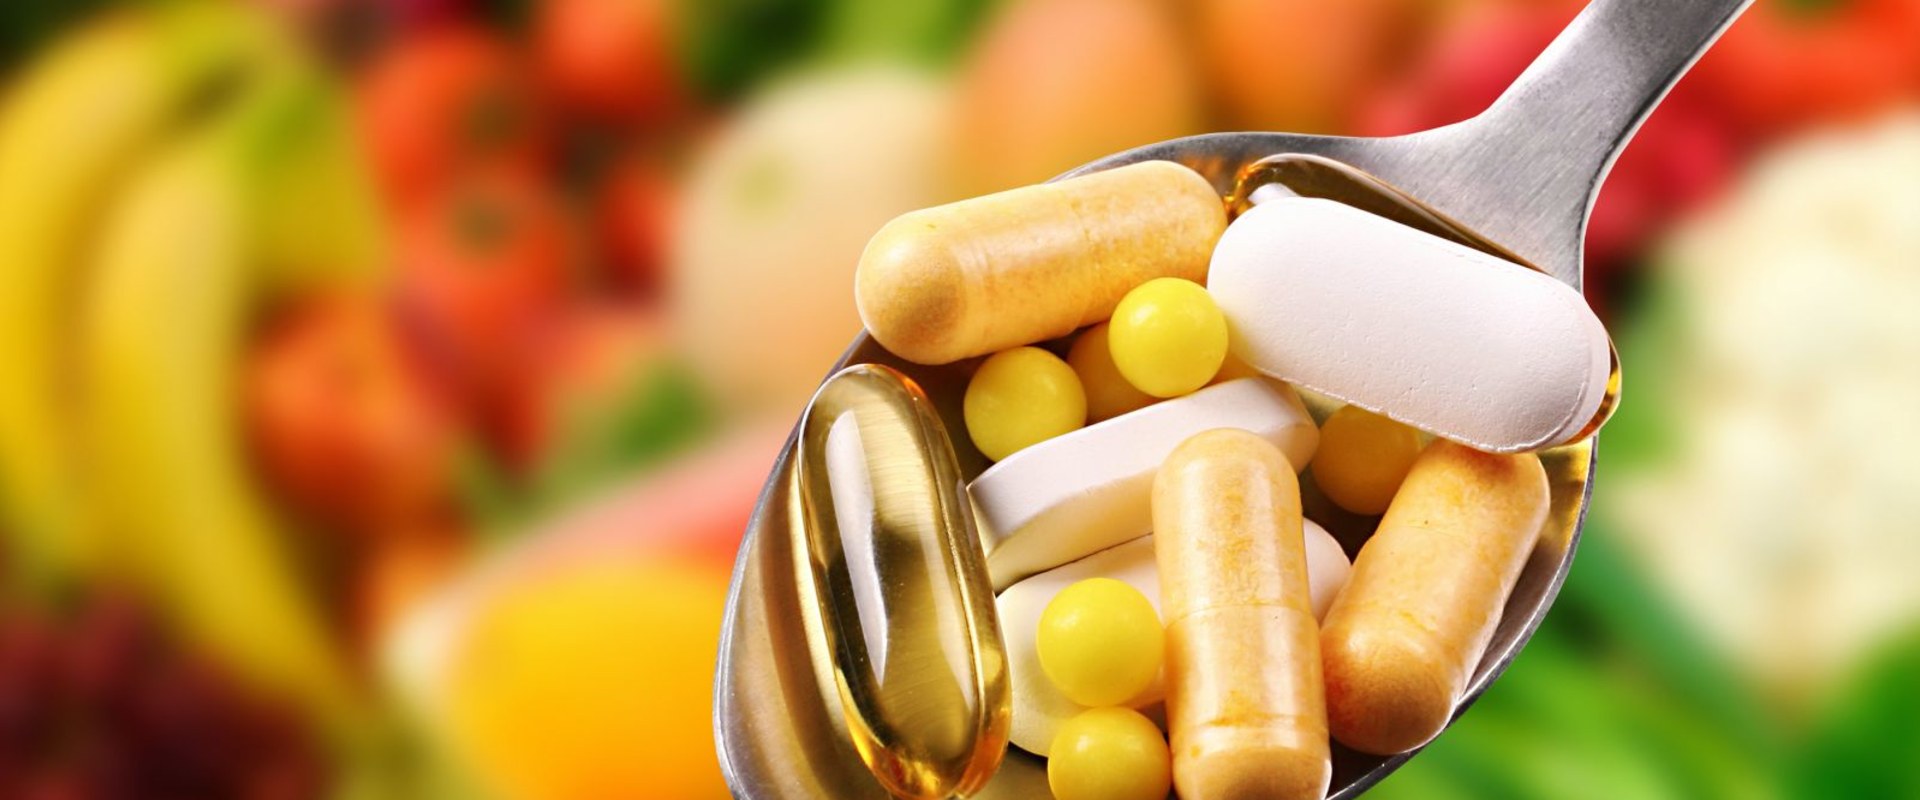 Are Dietary Supplements Safe? Understanding FDA Regulations